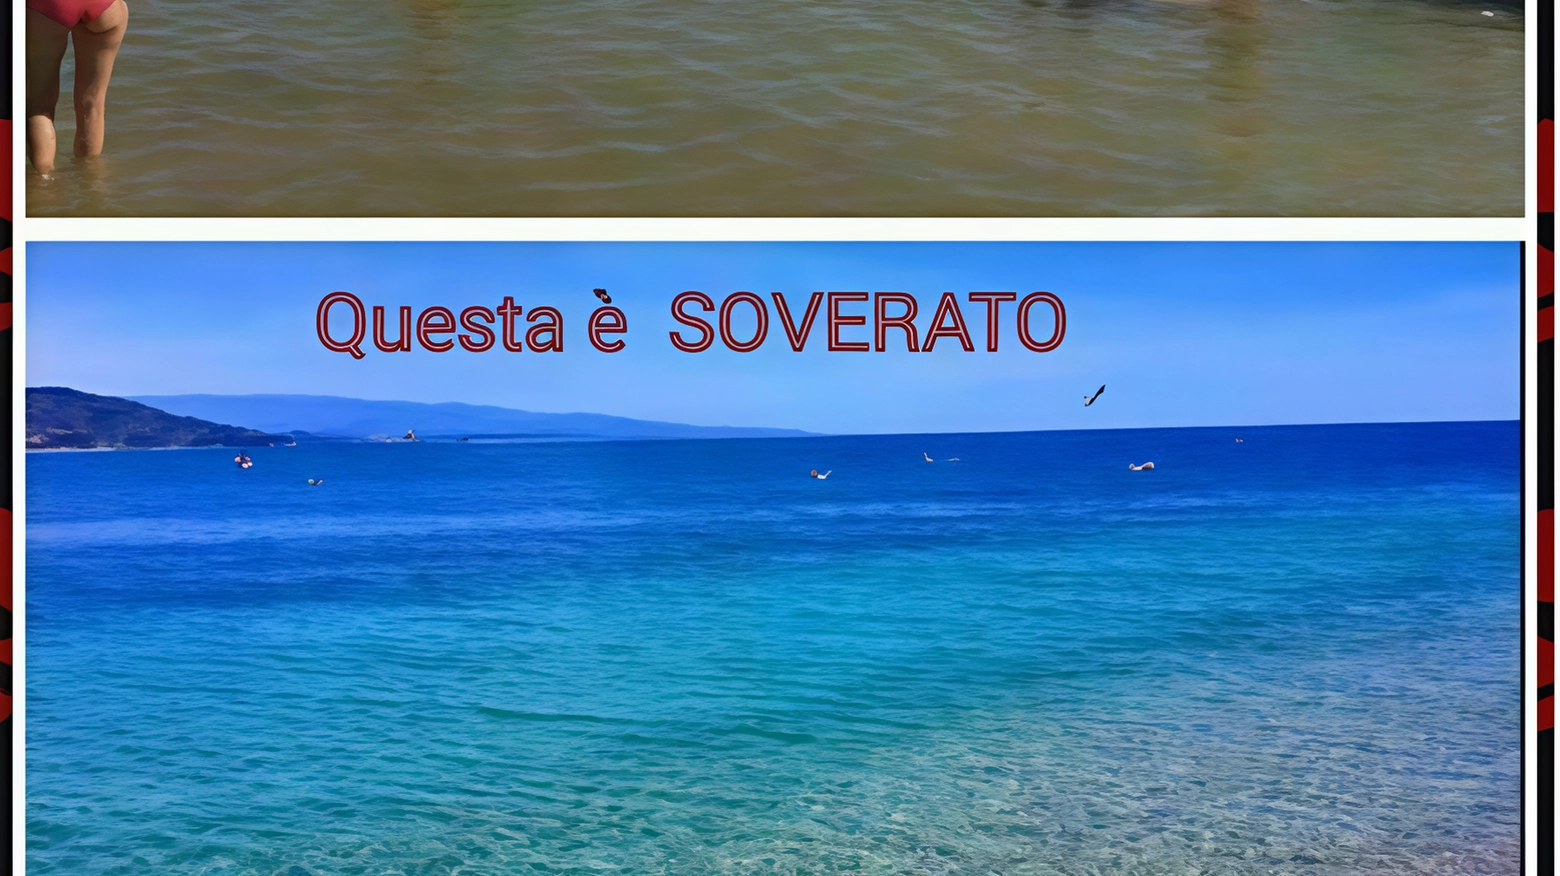 Rimini nel mirino del web: "Quel mare è sporco". Il sindaco: denuncio tutti